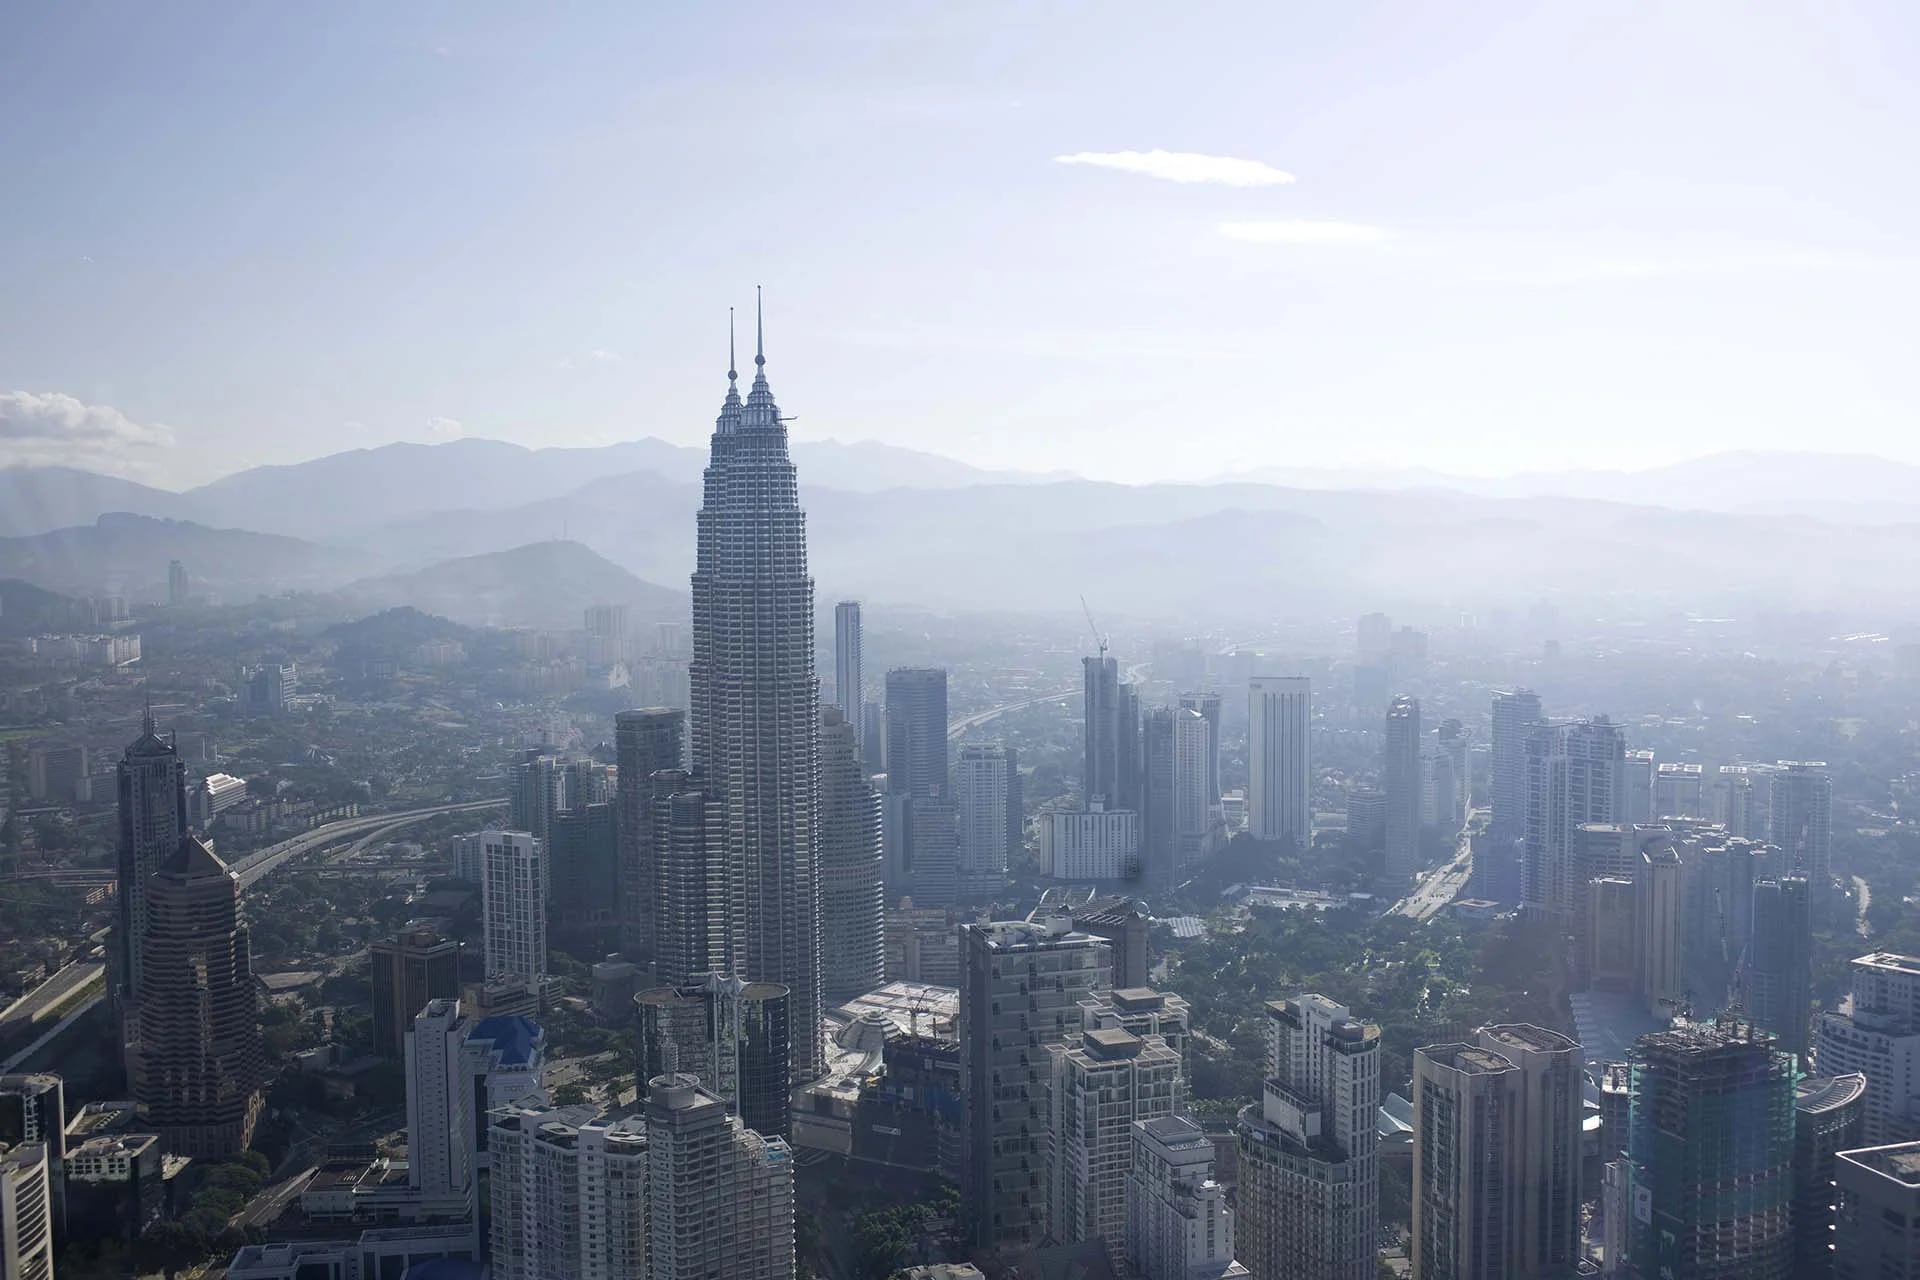 Una vista prodigiosa entre la bruma de las Petronas, por muchos años considerado el edificio más alto del mundo. El edificio hecho por Pelli fue un emblema del país malayo del siglo XXI (Shutterstock)